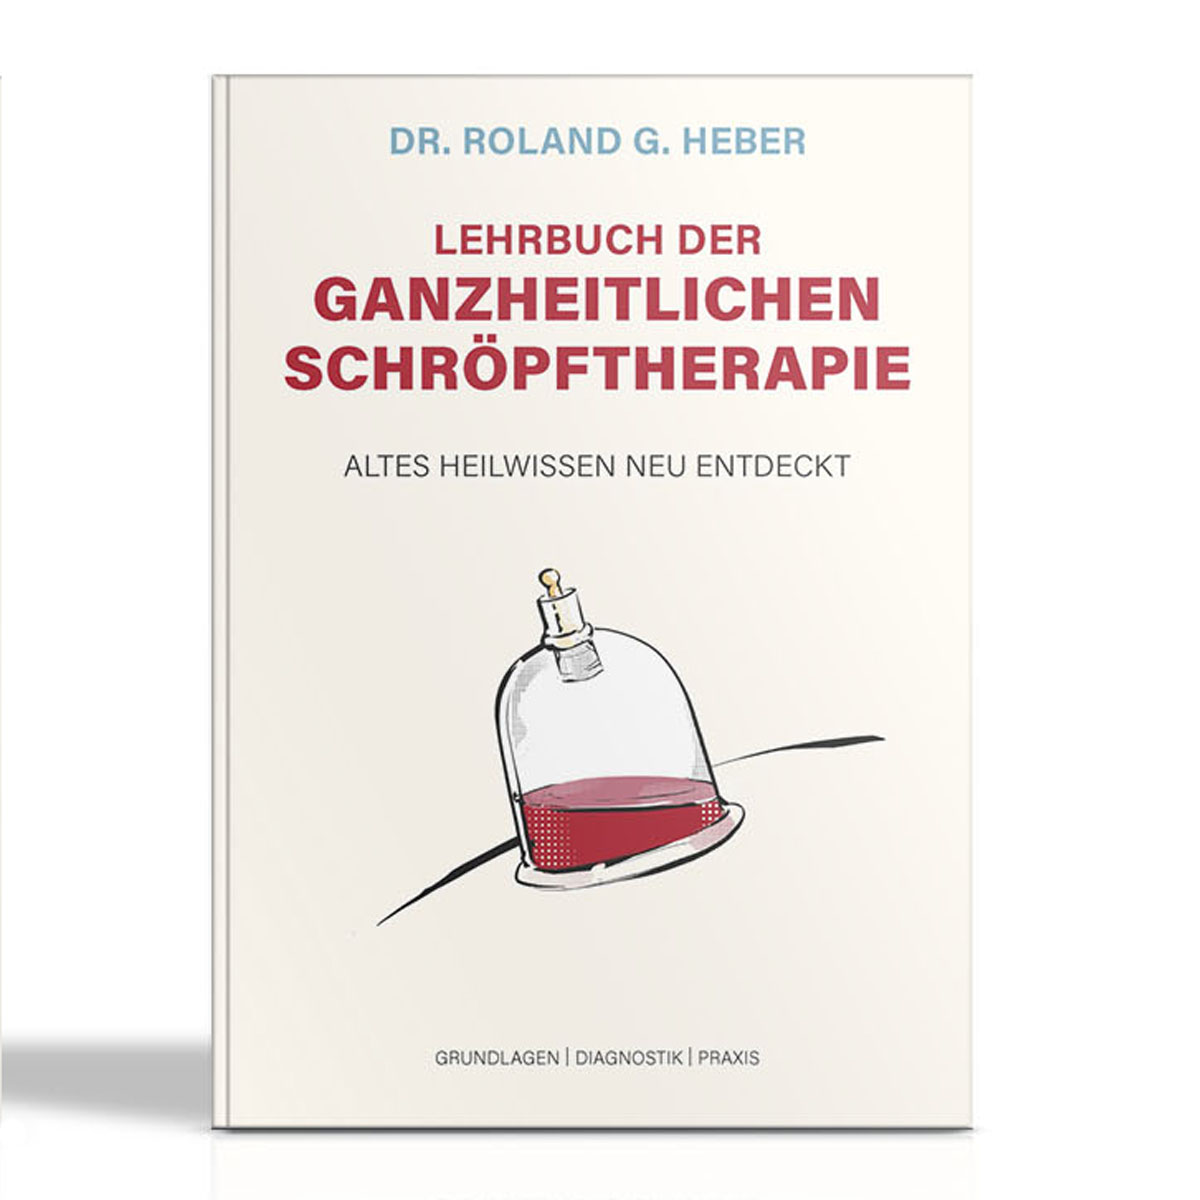 Lehrbuch der Ganzheitlichen Schröpftherapie - Altes Heilwissen neu entdeckt von Dr. Roland G. Heber.   